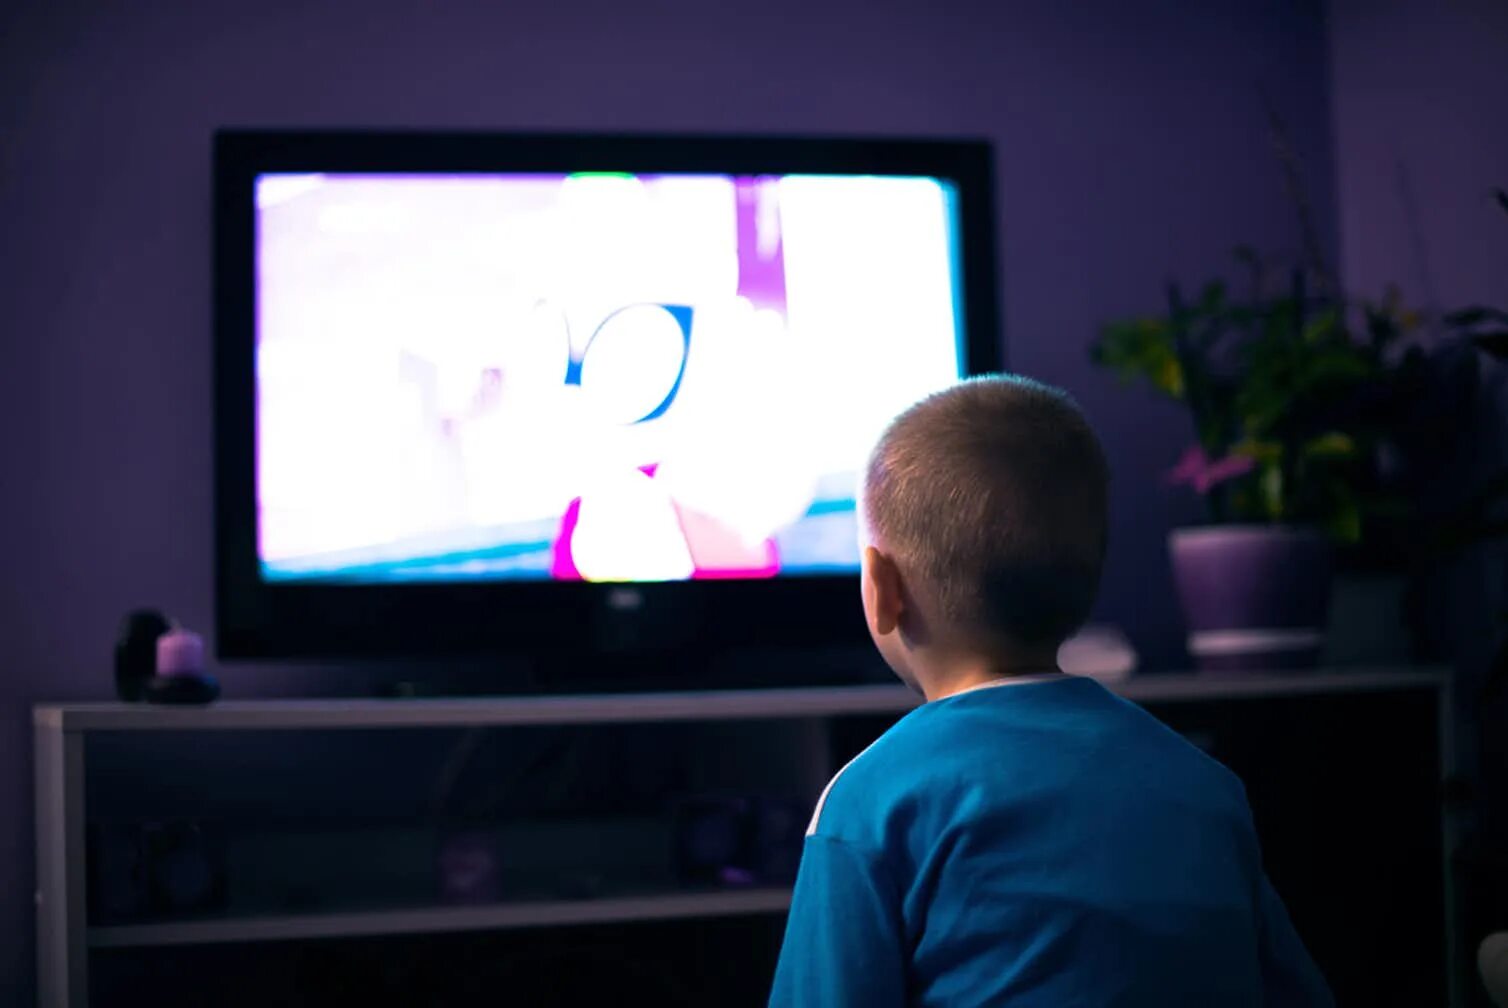 Мальчик у телевизора. Телевизор в темноте. Школьник у телевизора. Телевизор для детей.